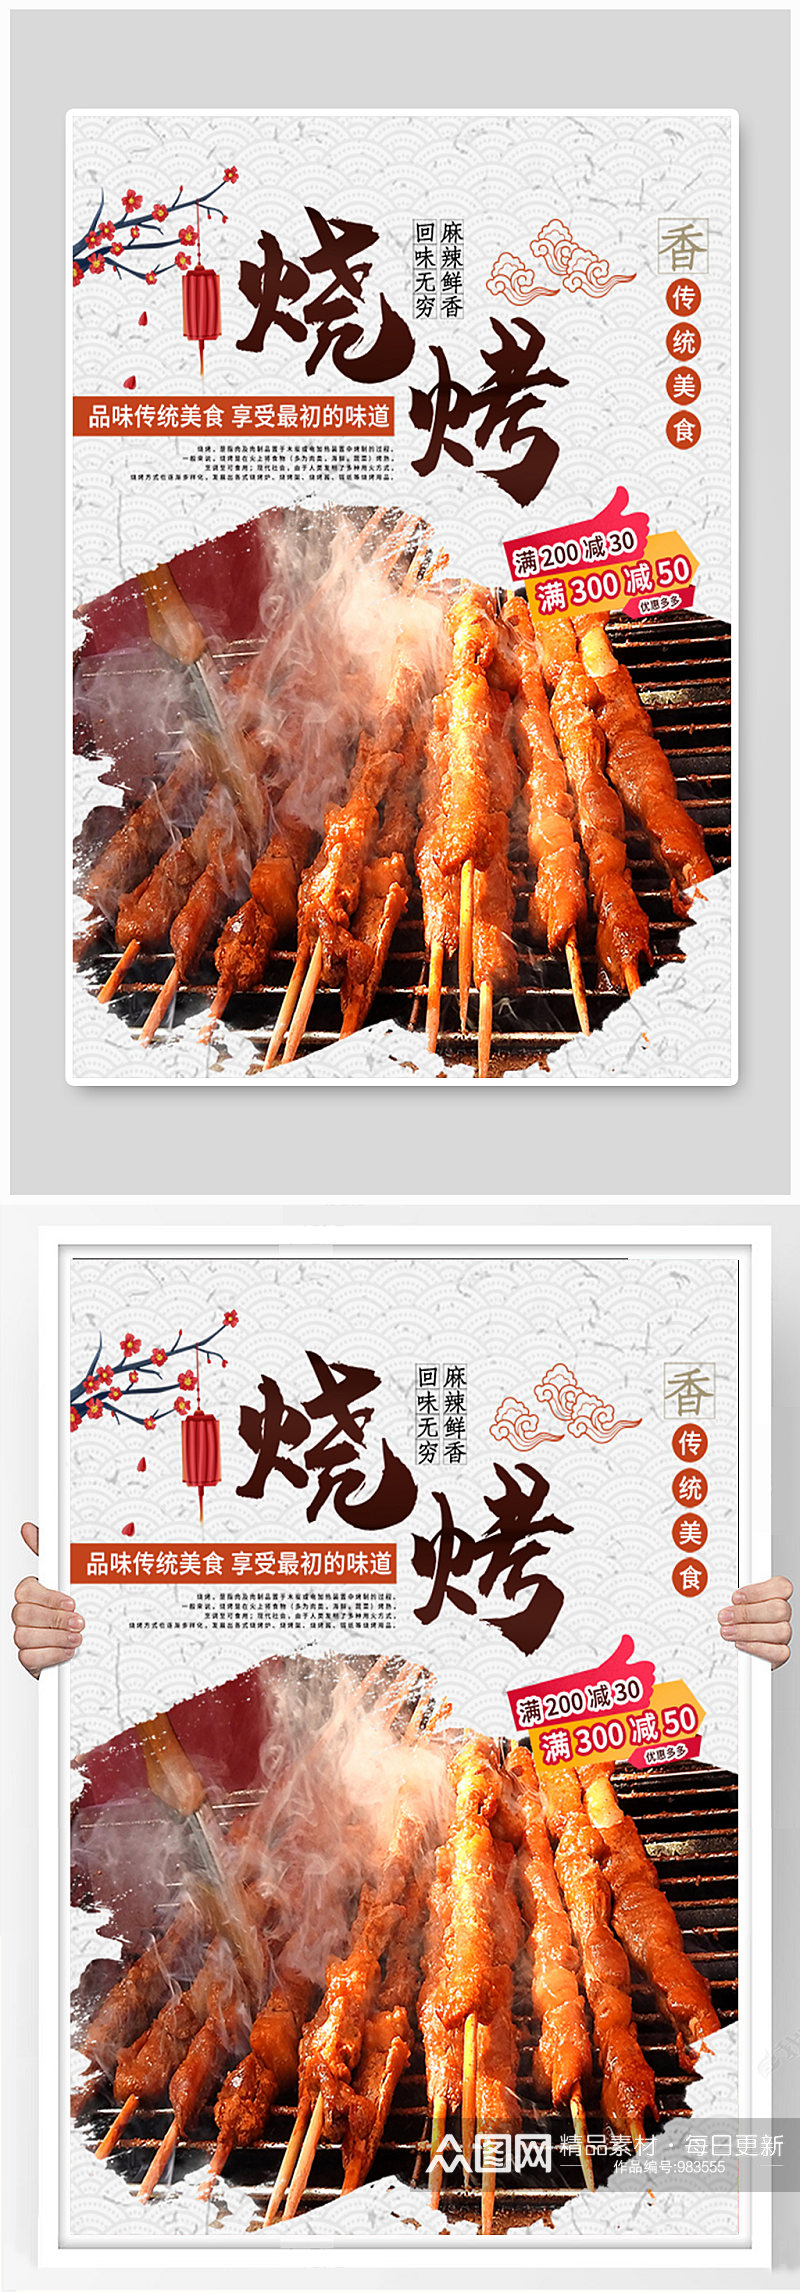 中国风烧烤烤串美食宣传展板海报素材